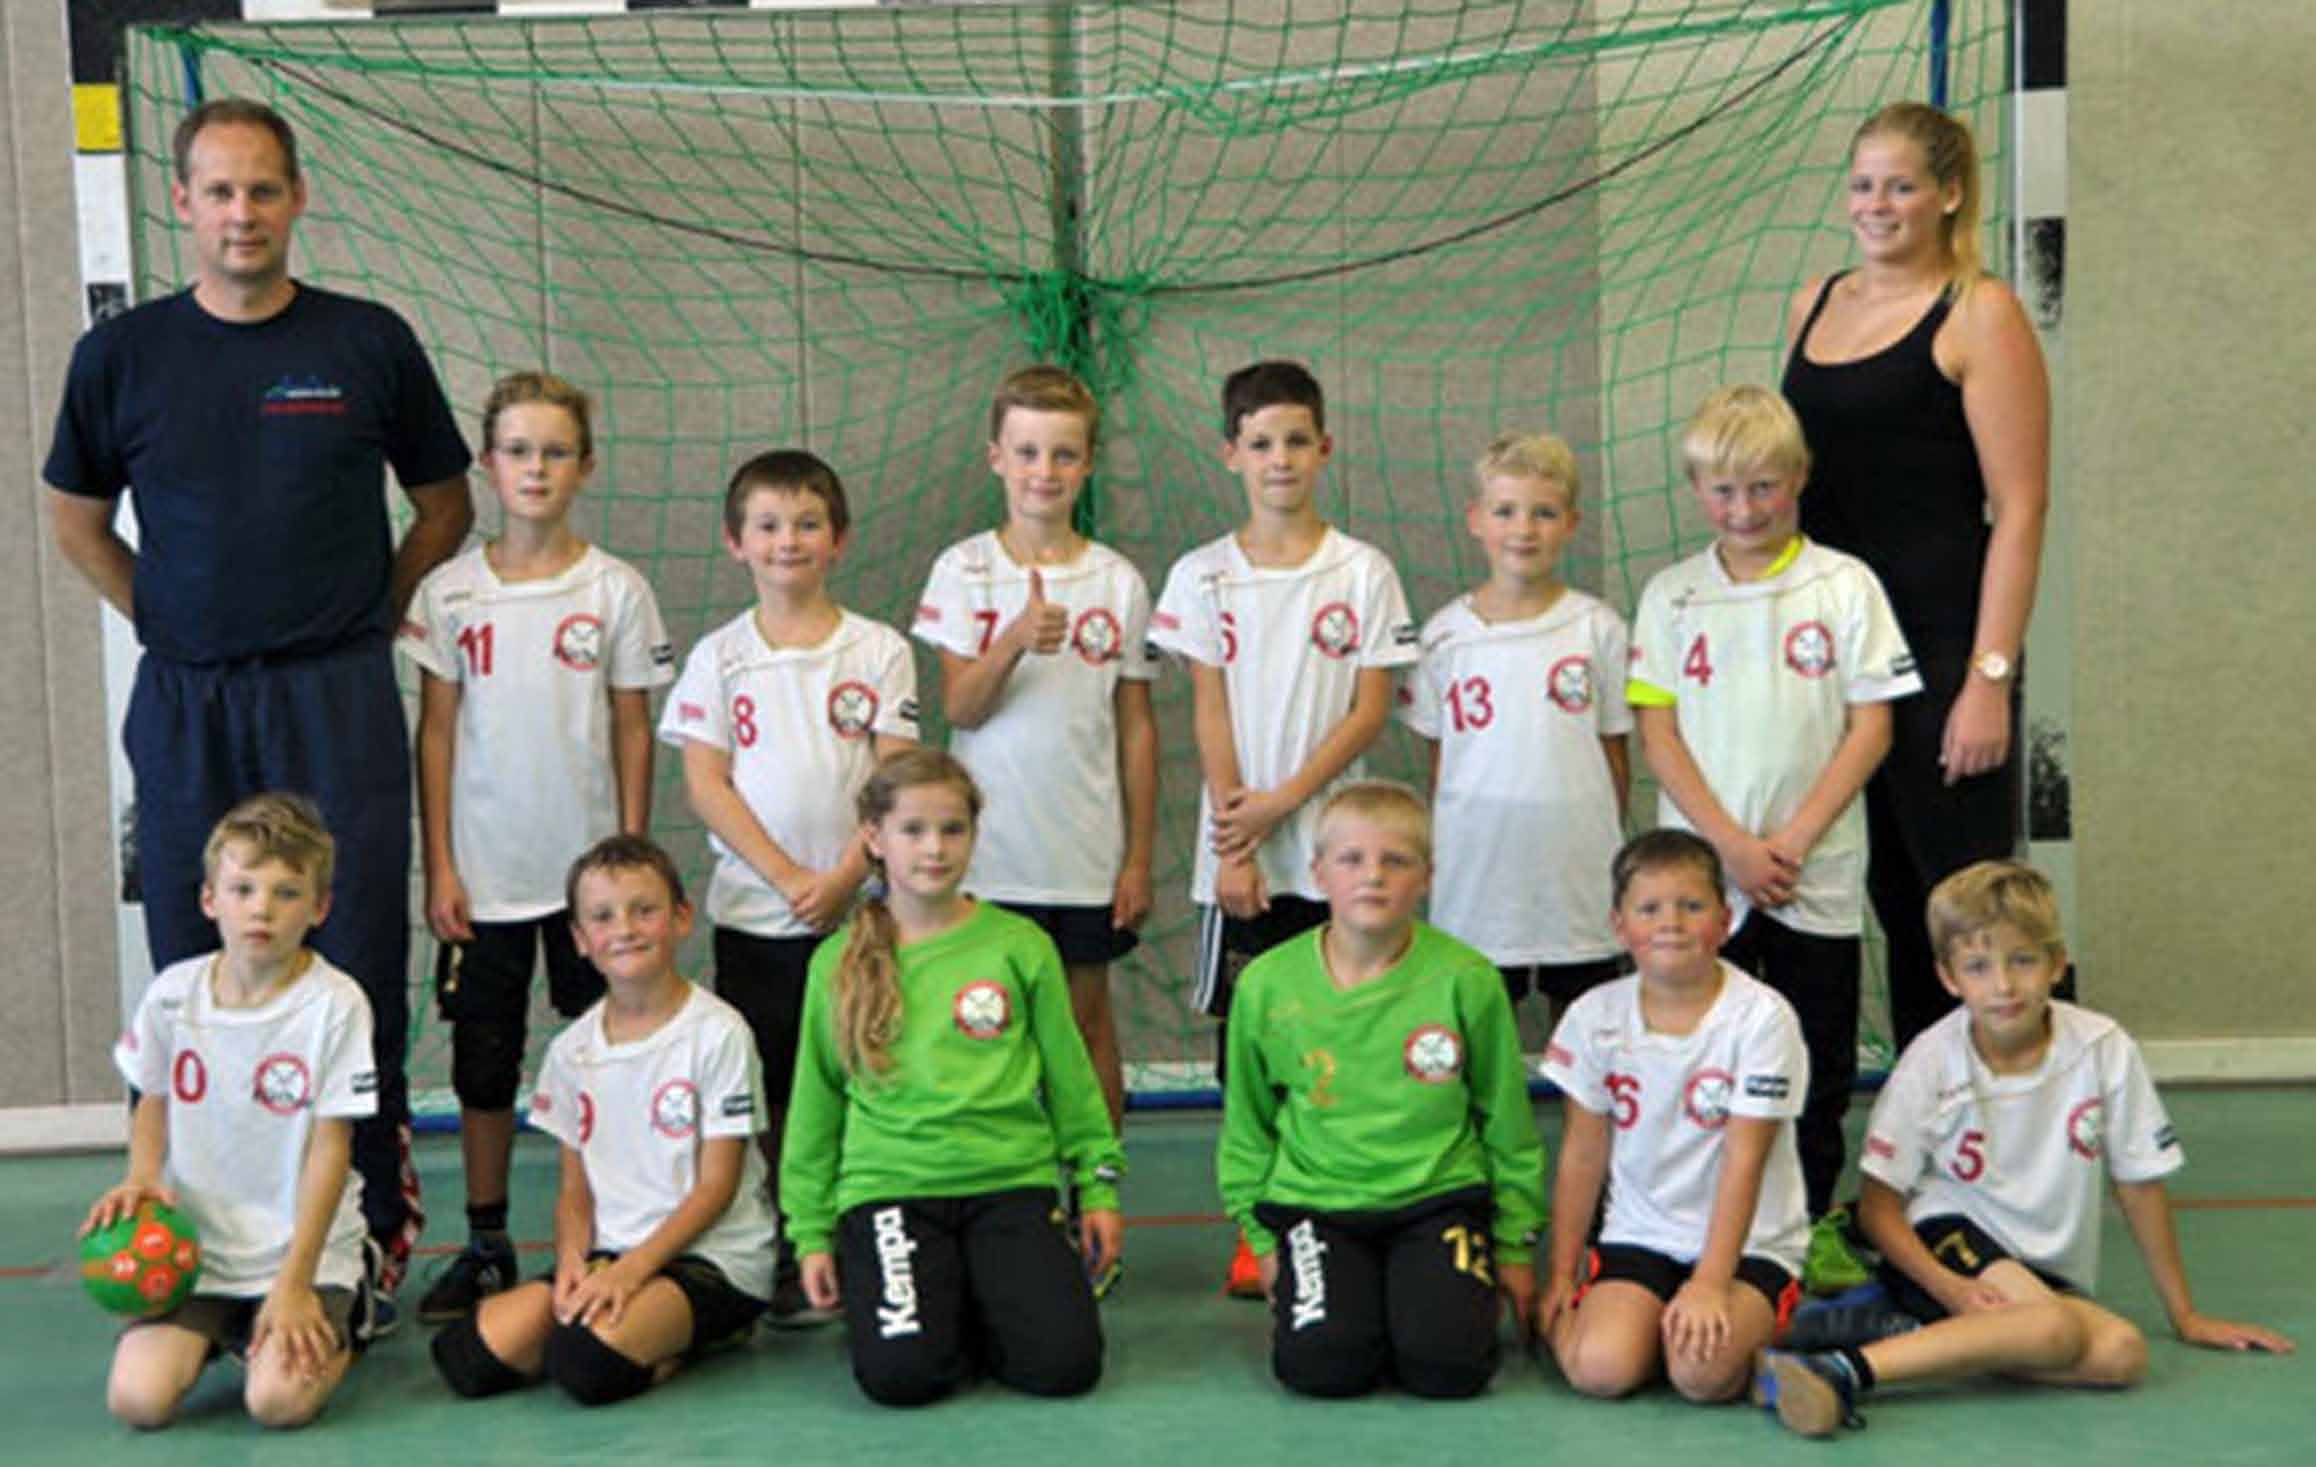 Handball - Kinder und Jugend Wir sind die Mannschaften der Jugendspielgemeinschaft Füchse Oberberg (SV Wipperfürth und ATV Hückeswagen). Ihr findet weitere Infos zu uns im Internet: http://www.